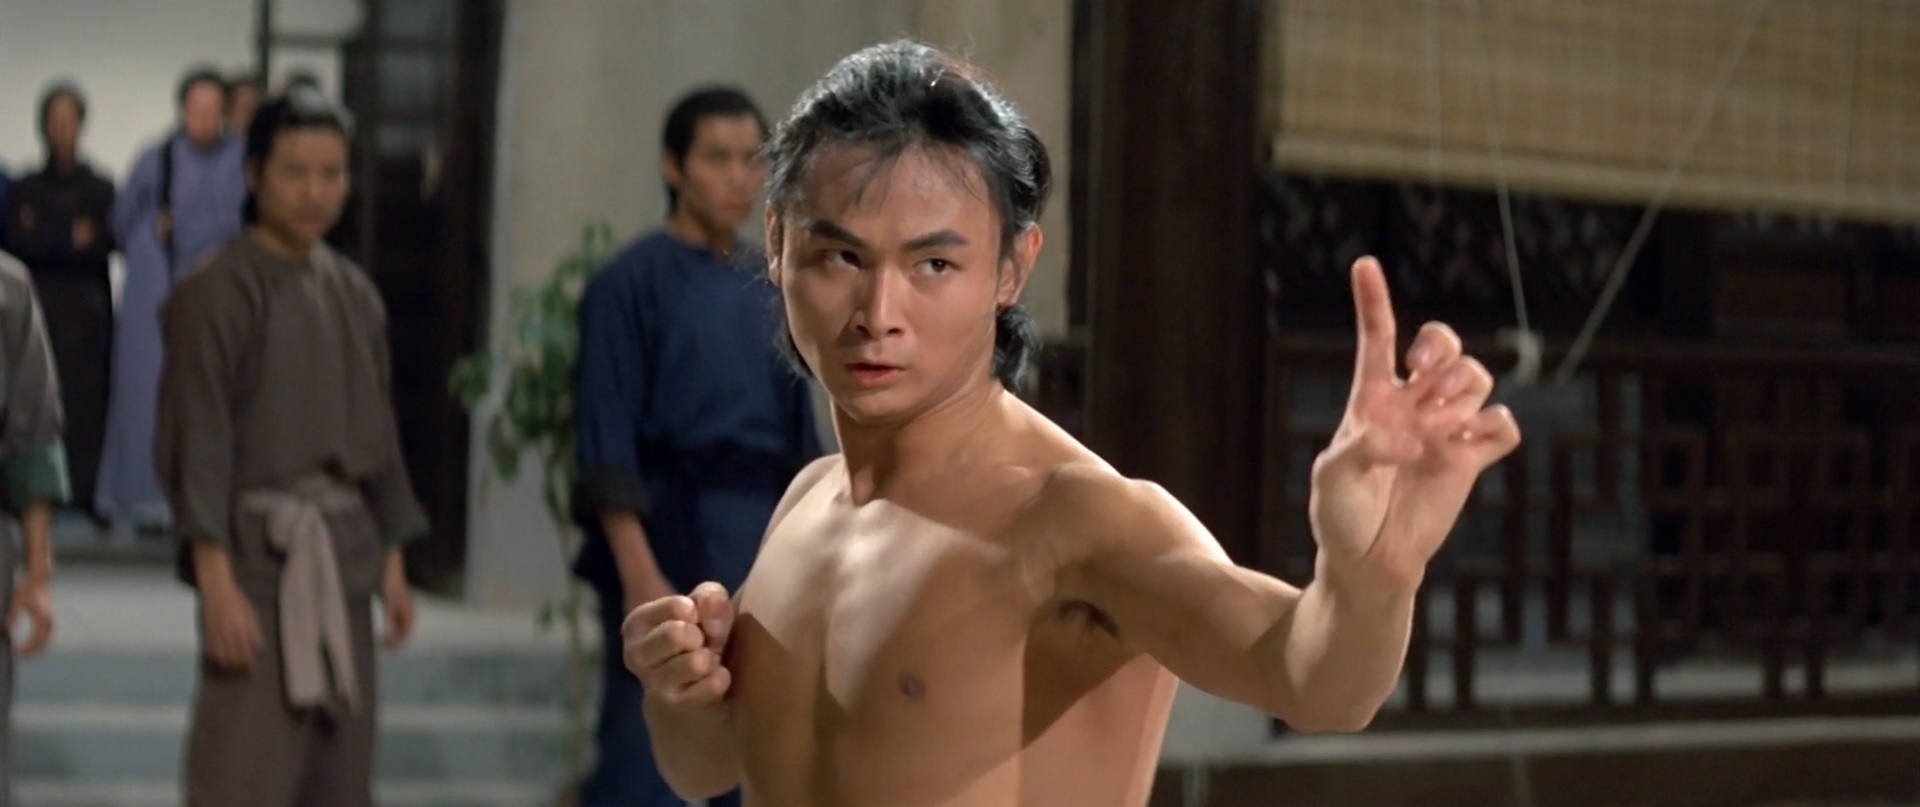 Shaolin Martial Arts (1974) « Silver Emulsion Film Reviews